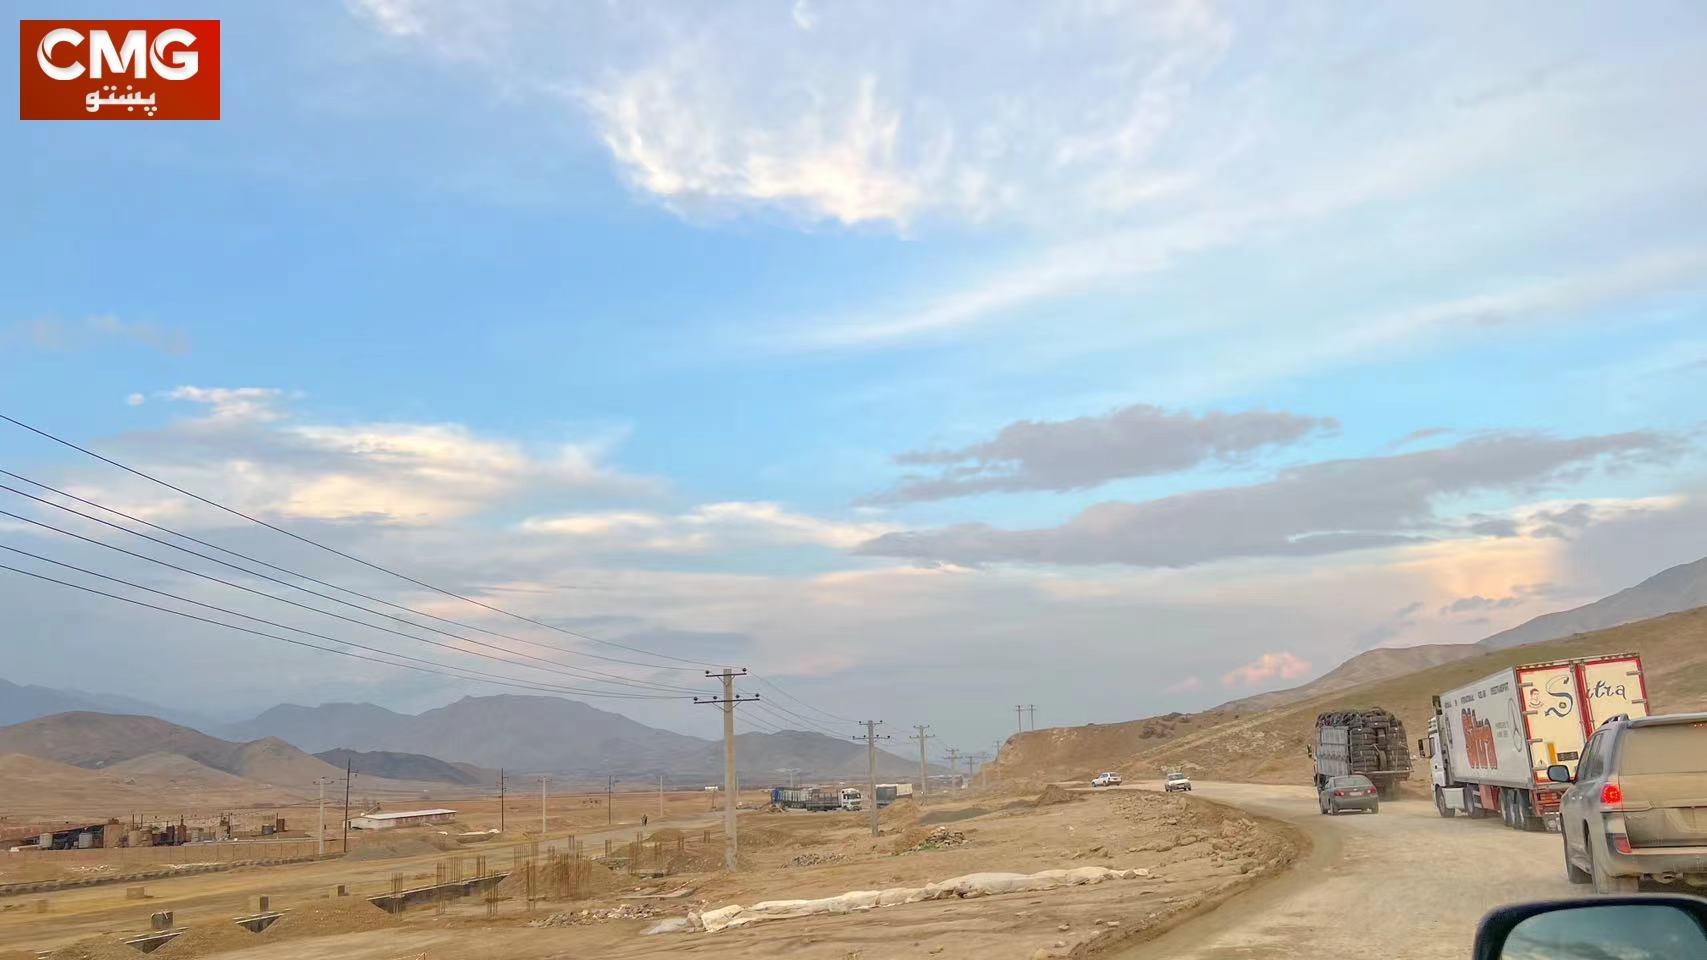 د کابل- کندهار د لویې لارې په ځینو برخو کې د بیارغونې چارې پیل شوې دي